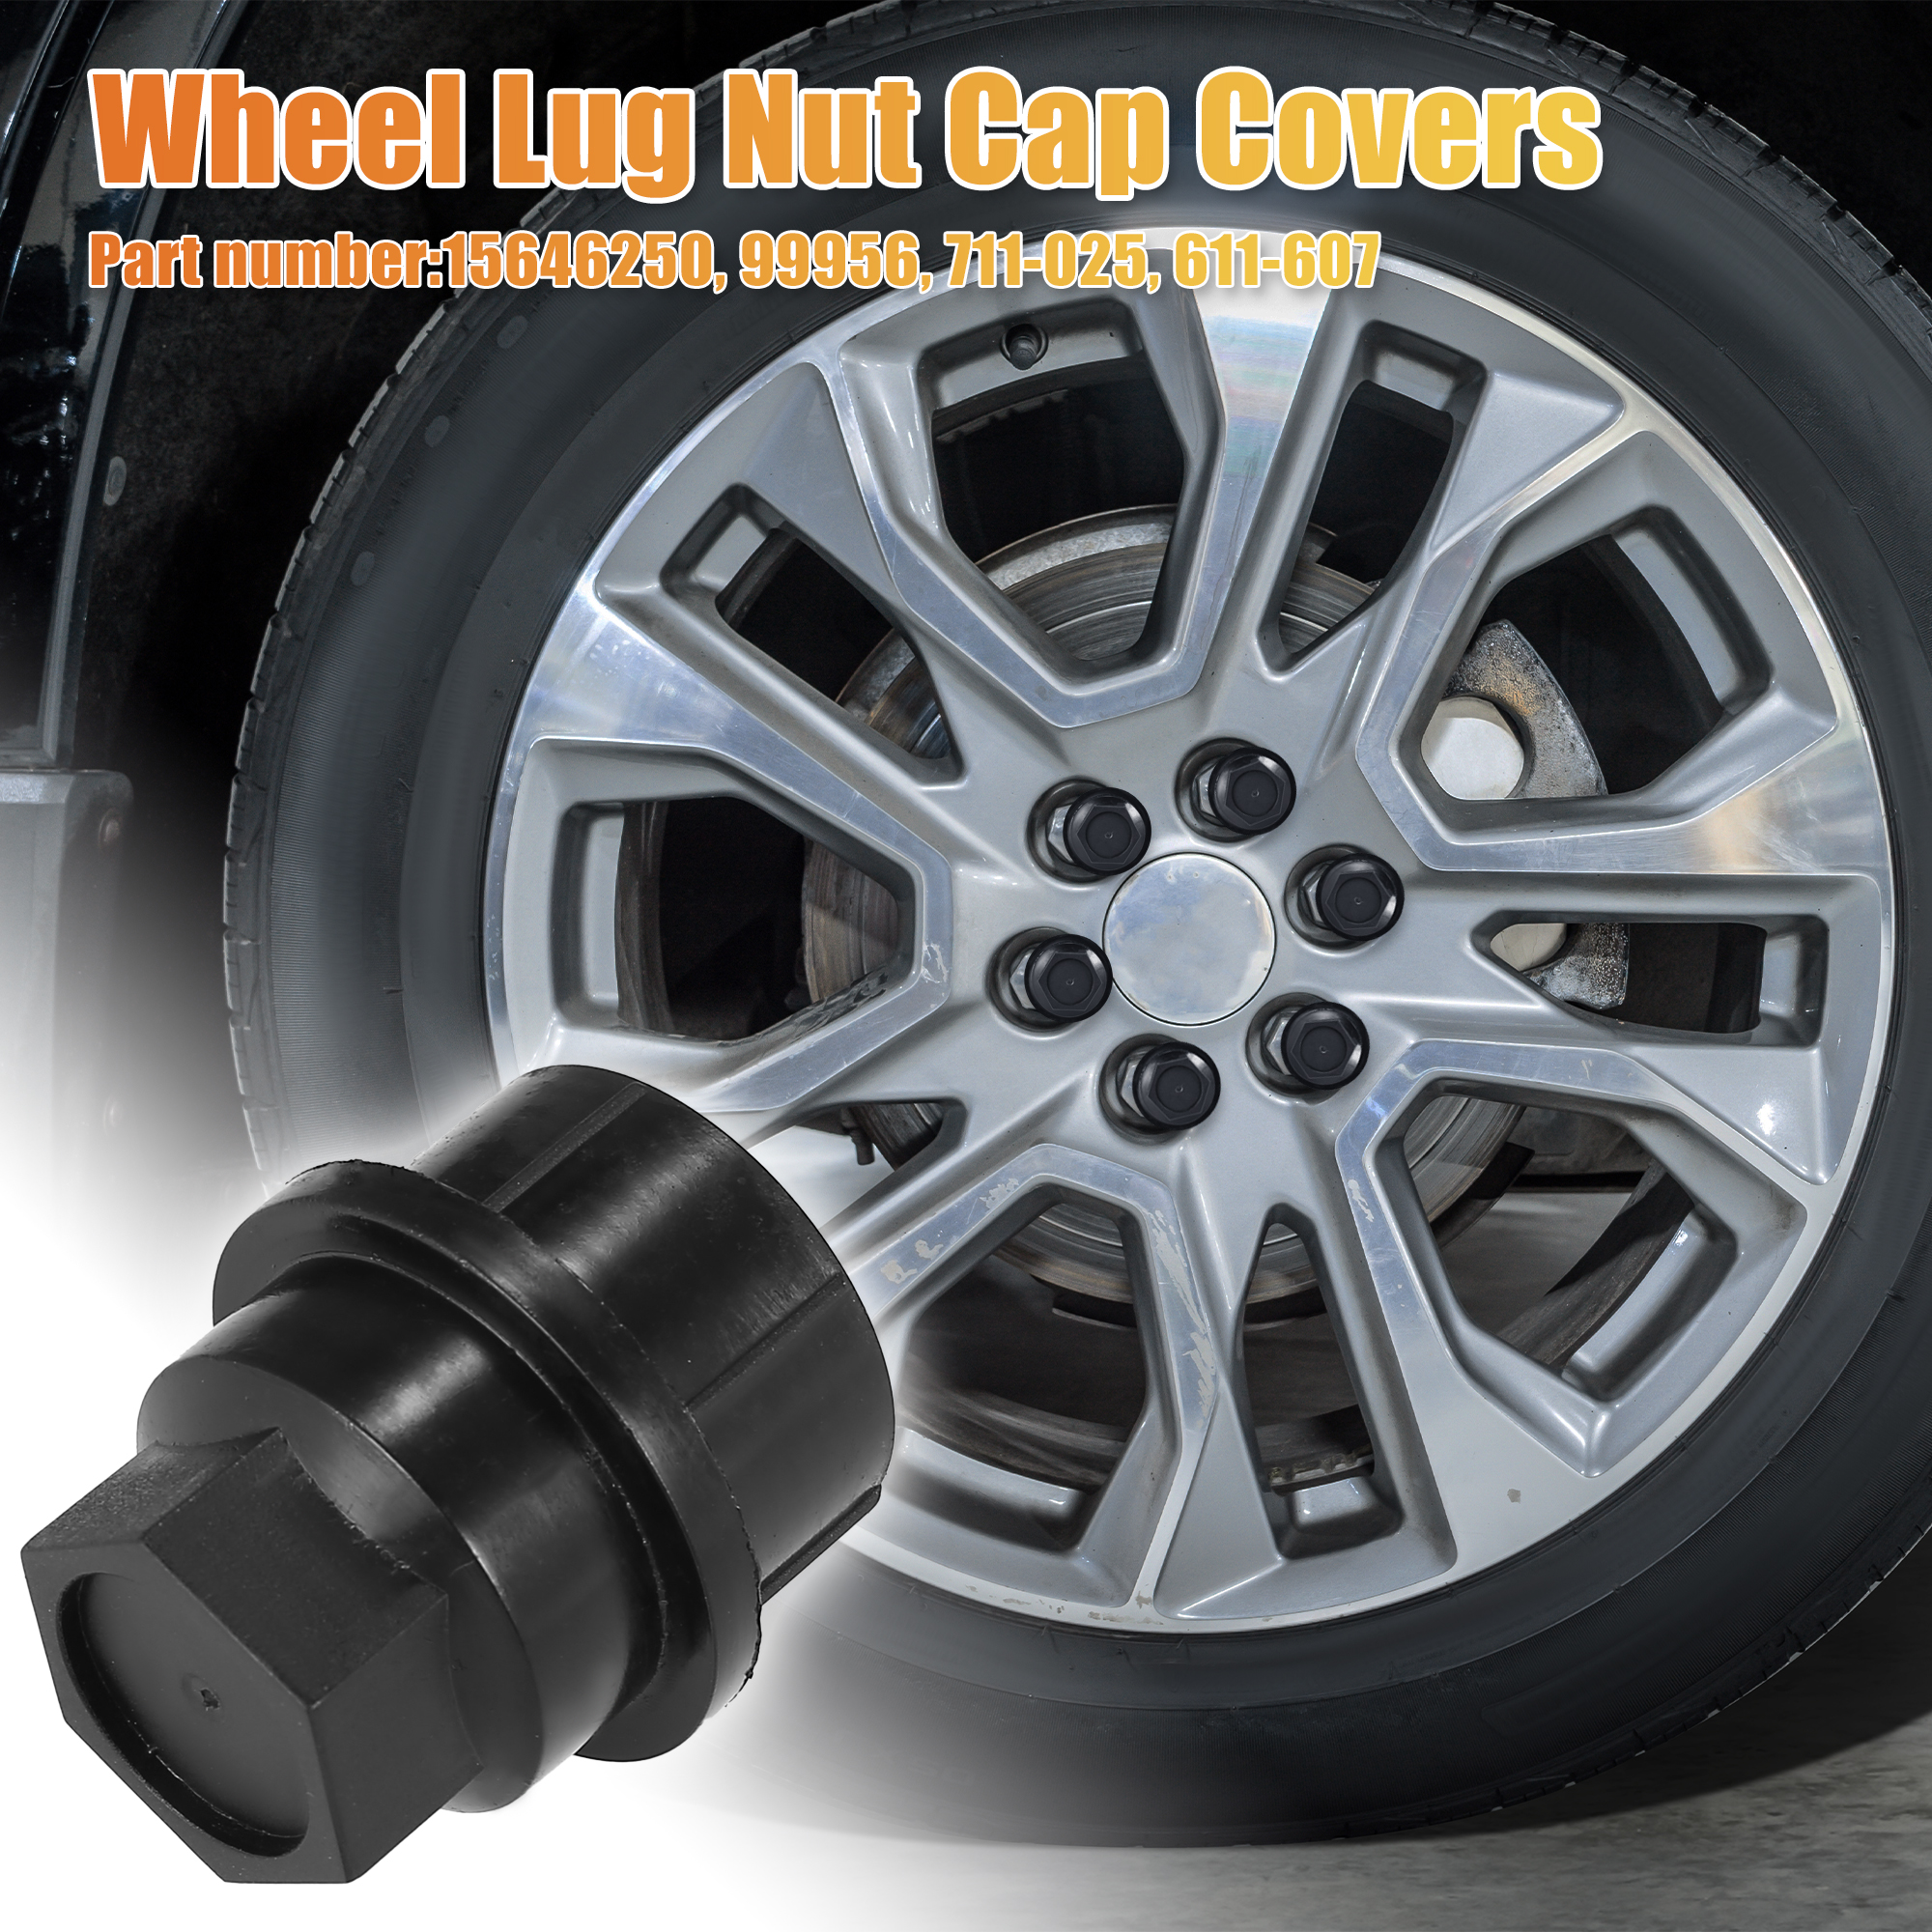 Unique Bargains 24 Pcs Wheel Lug Nut Cap Covers 15646250 for Chevroet for  GMC 1500 2500 Suburban 711-025 611-607 99956